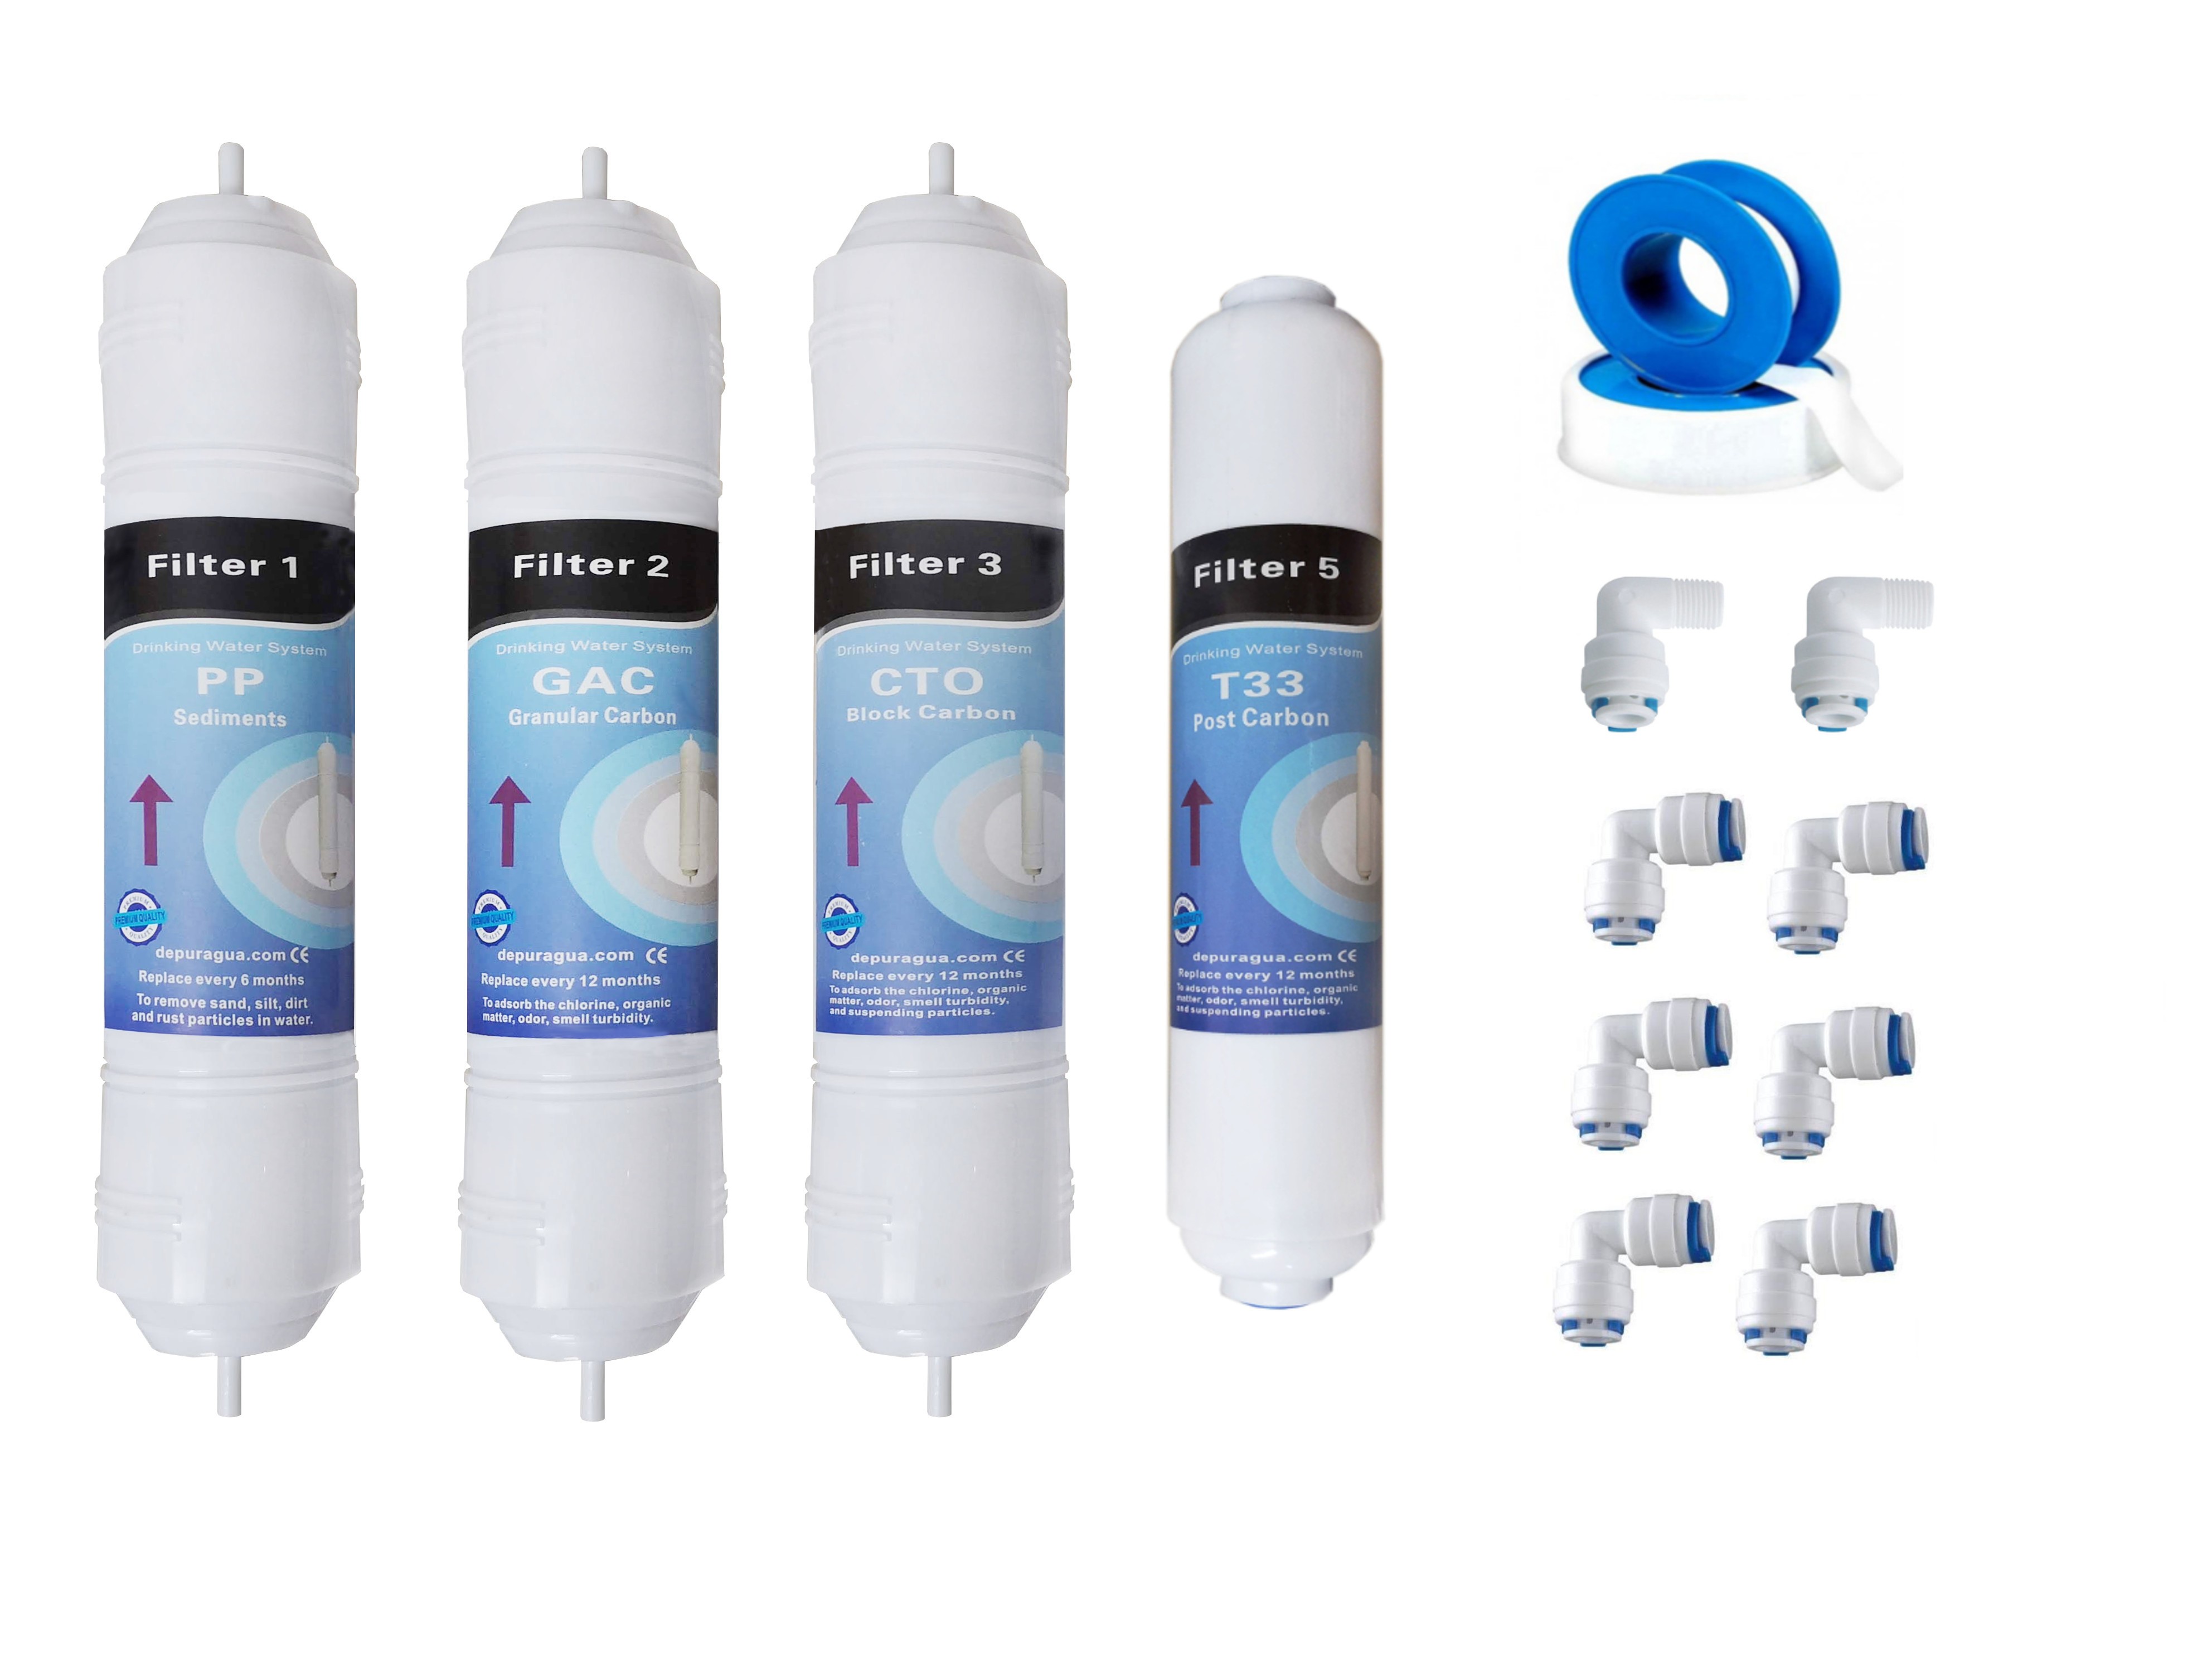 Ricambi per osmosi inversa - Membrane, Vessel, Flussimetri, filtri